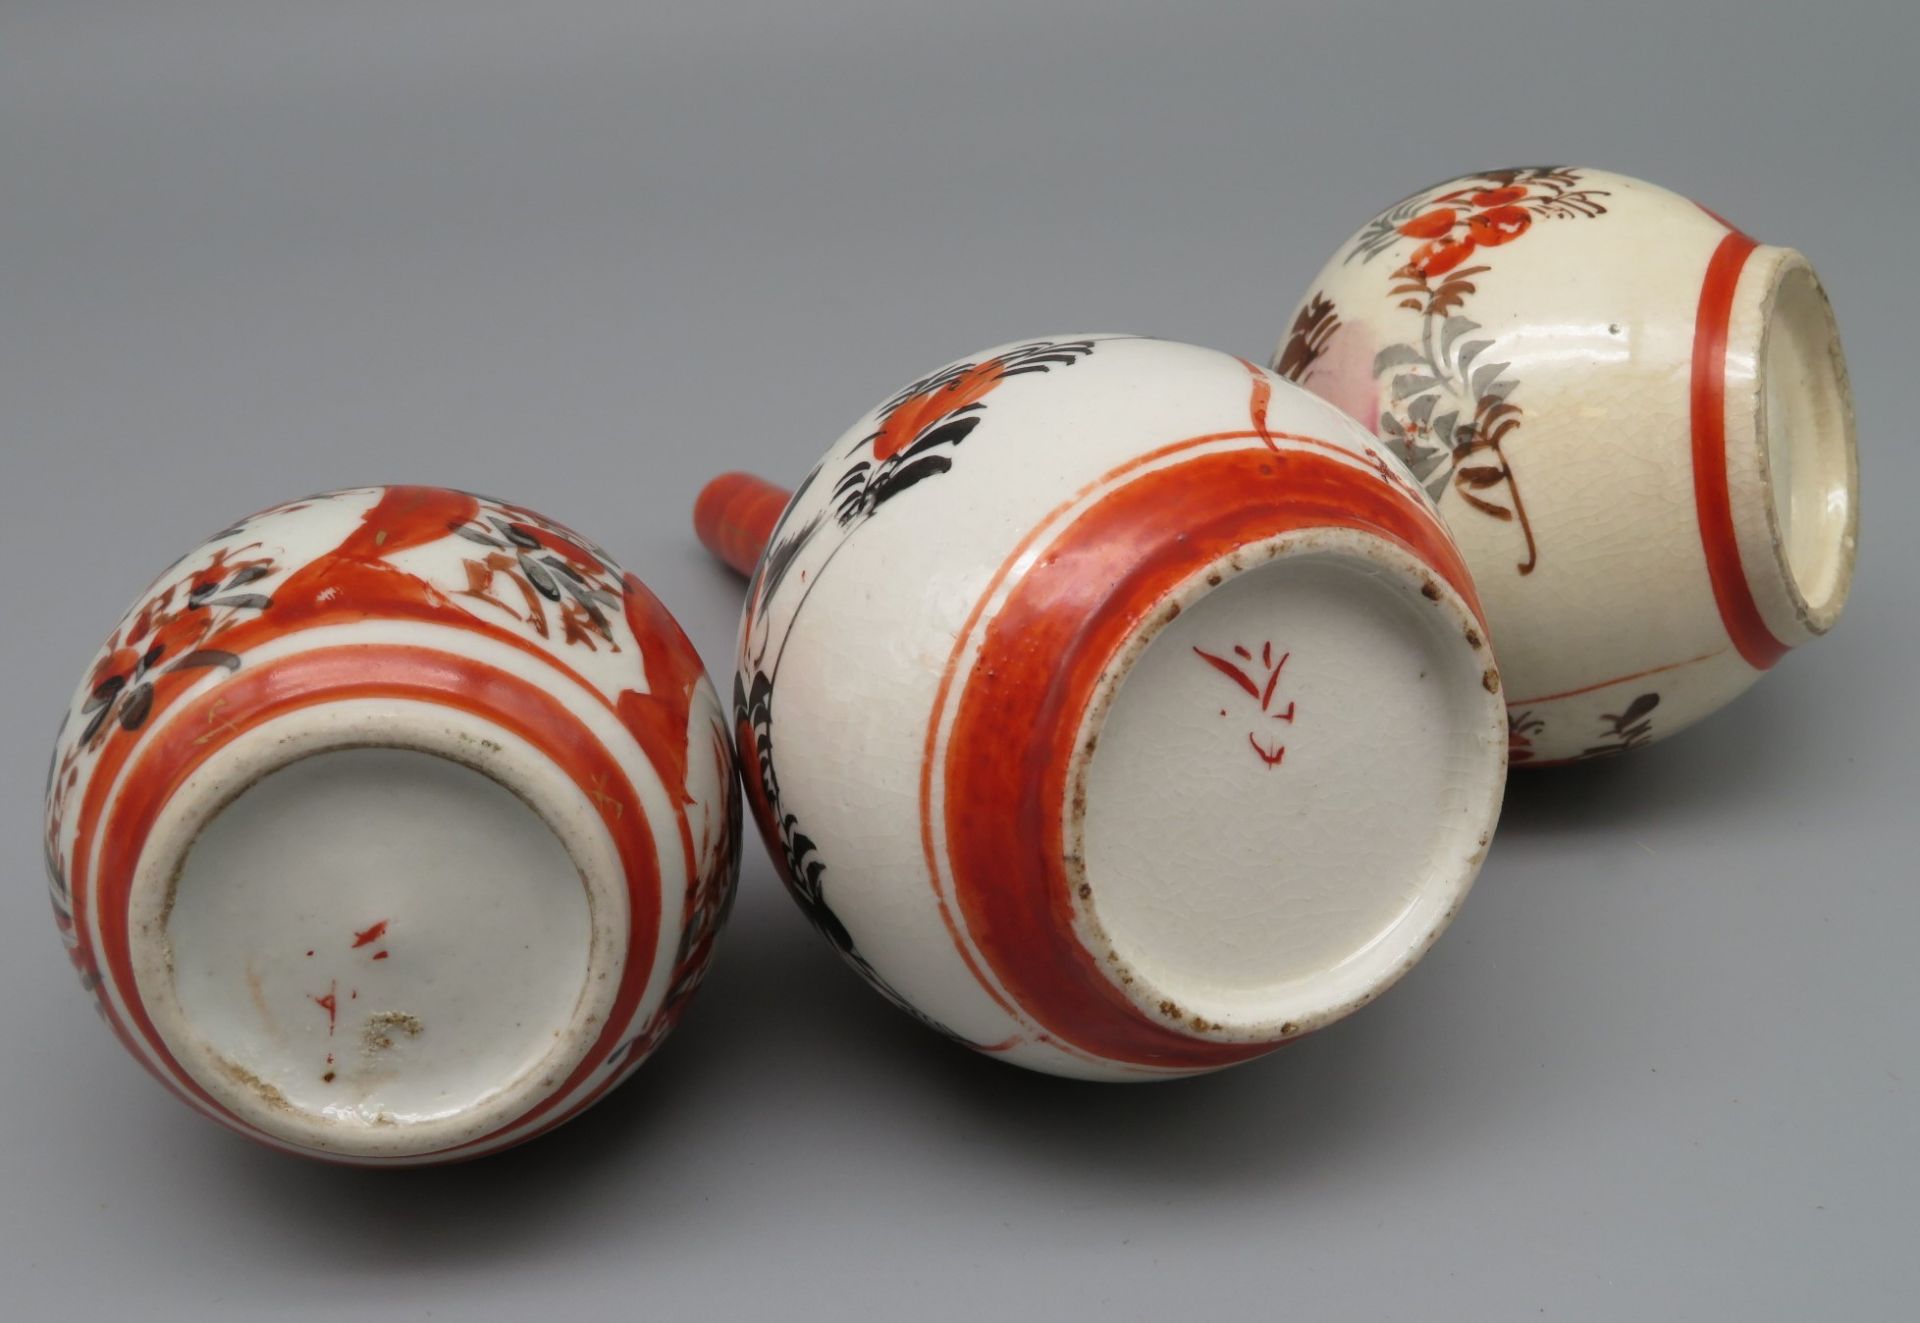 3 Vasen, Japan, Kutani, Weißporzellan mit polychromer Handbemalung von Blüten und Vögeln, Bodensign - Image 2 of 2